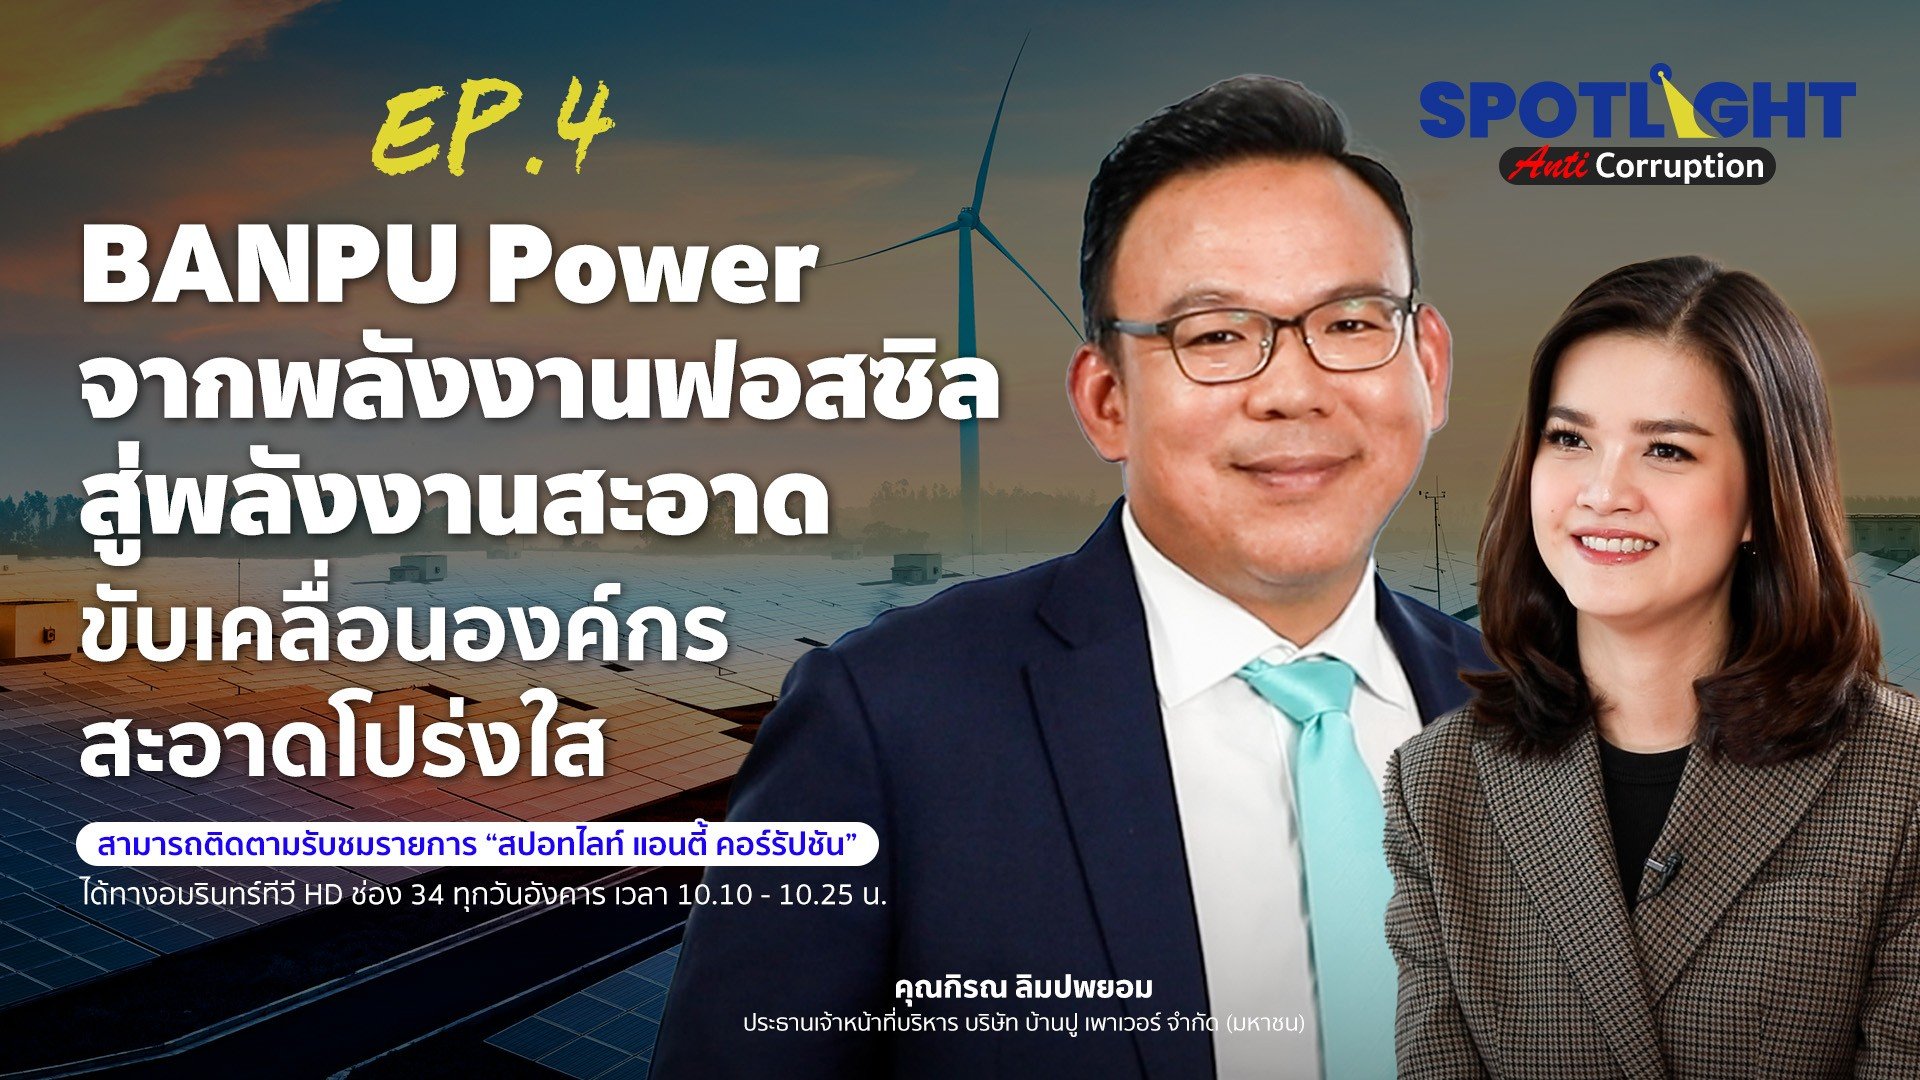 BANPU Power จากพลังงานฟอสซิล สู่พลังงานสะอาด ขับเคลื่อนด้วยองค์กรสะอาดโปร่งใส | Spotlight | 26 เม.ย. 66 | AMARIN TVHD34